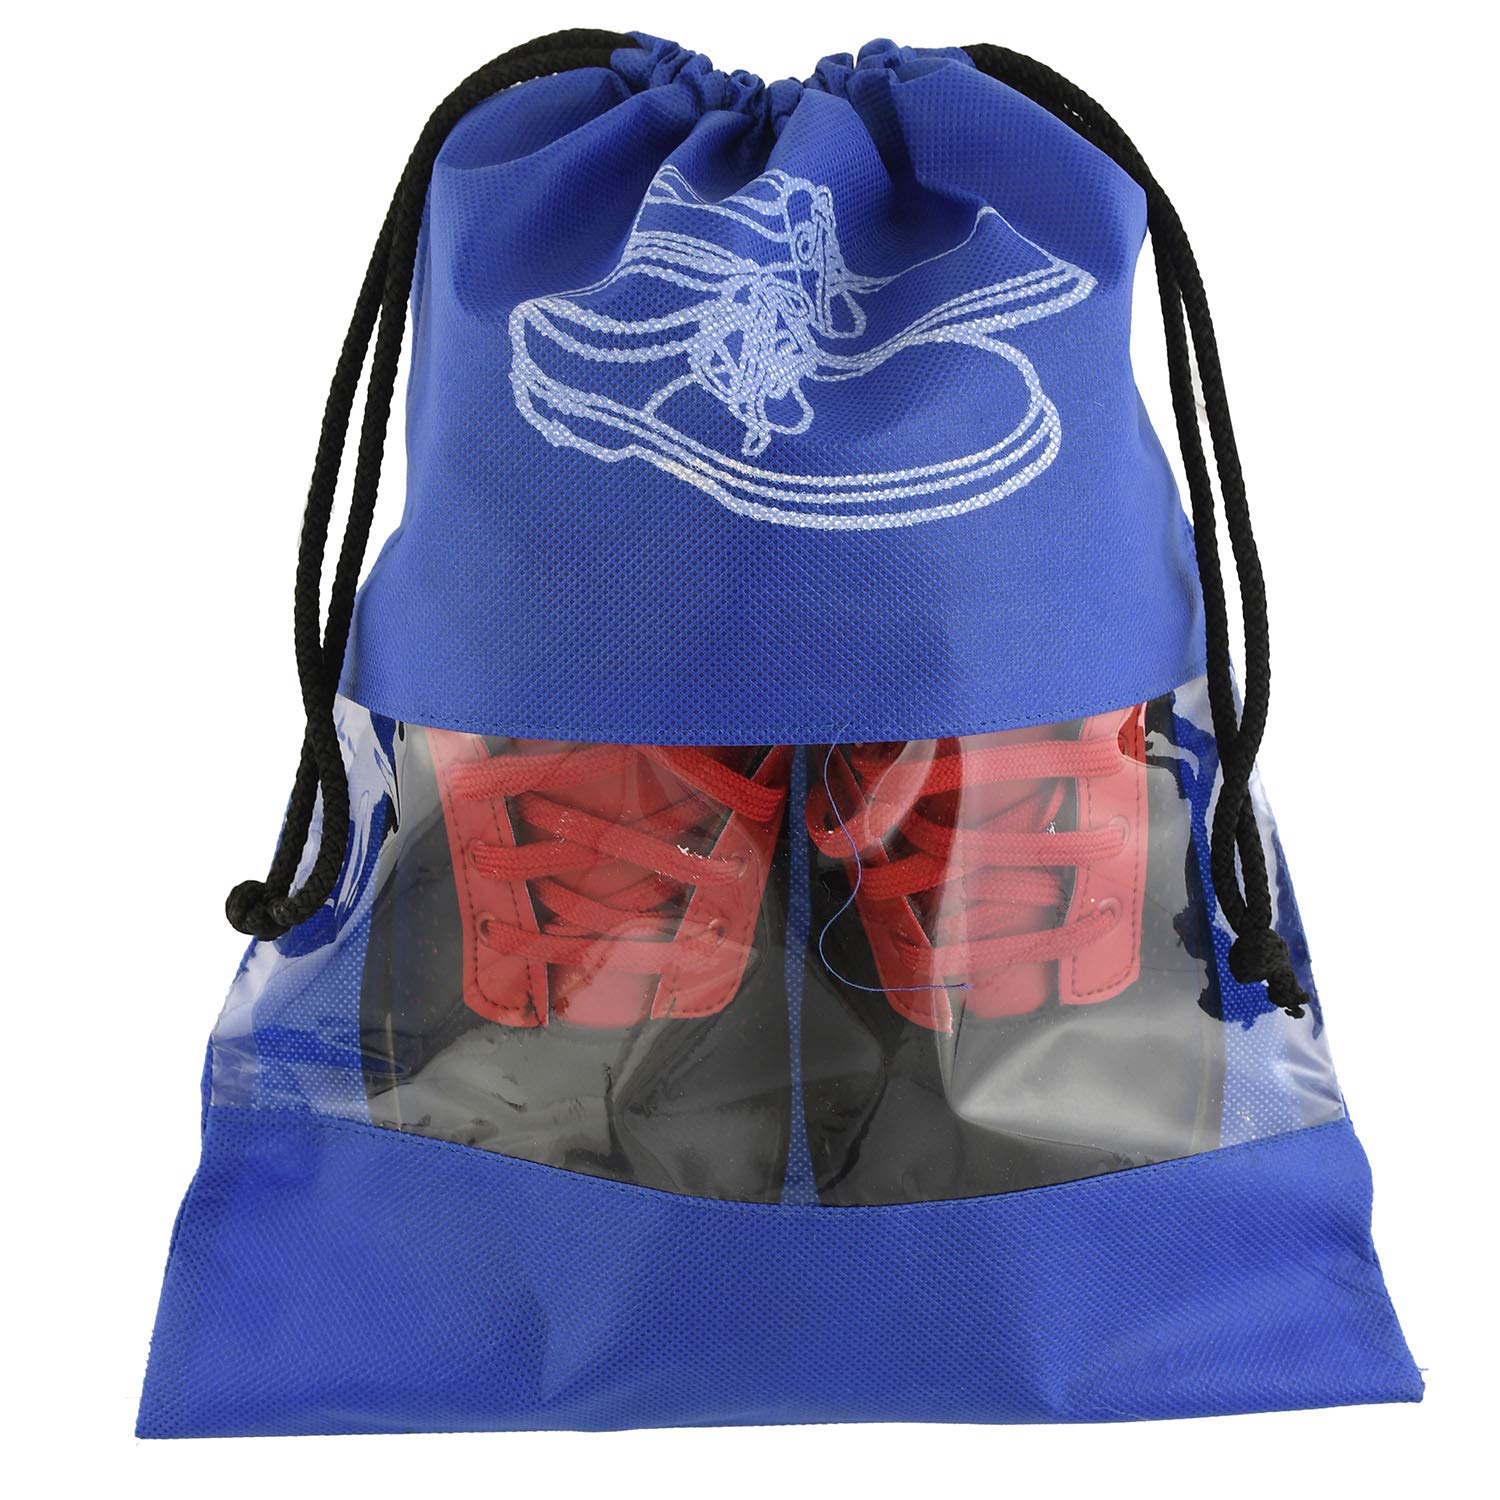 Heart Home 6 Piece Non Woven Travel Shoe Cover, String Bag Organizer, Royal Blue HEART5243, Standard